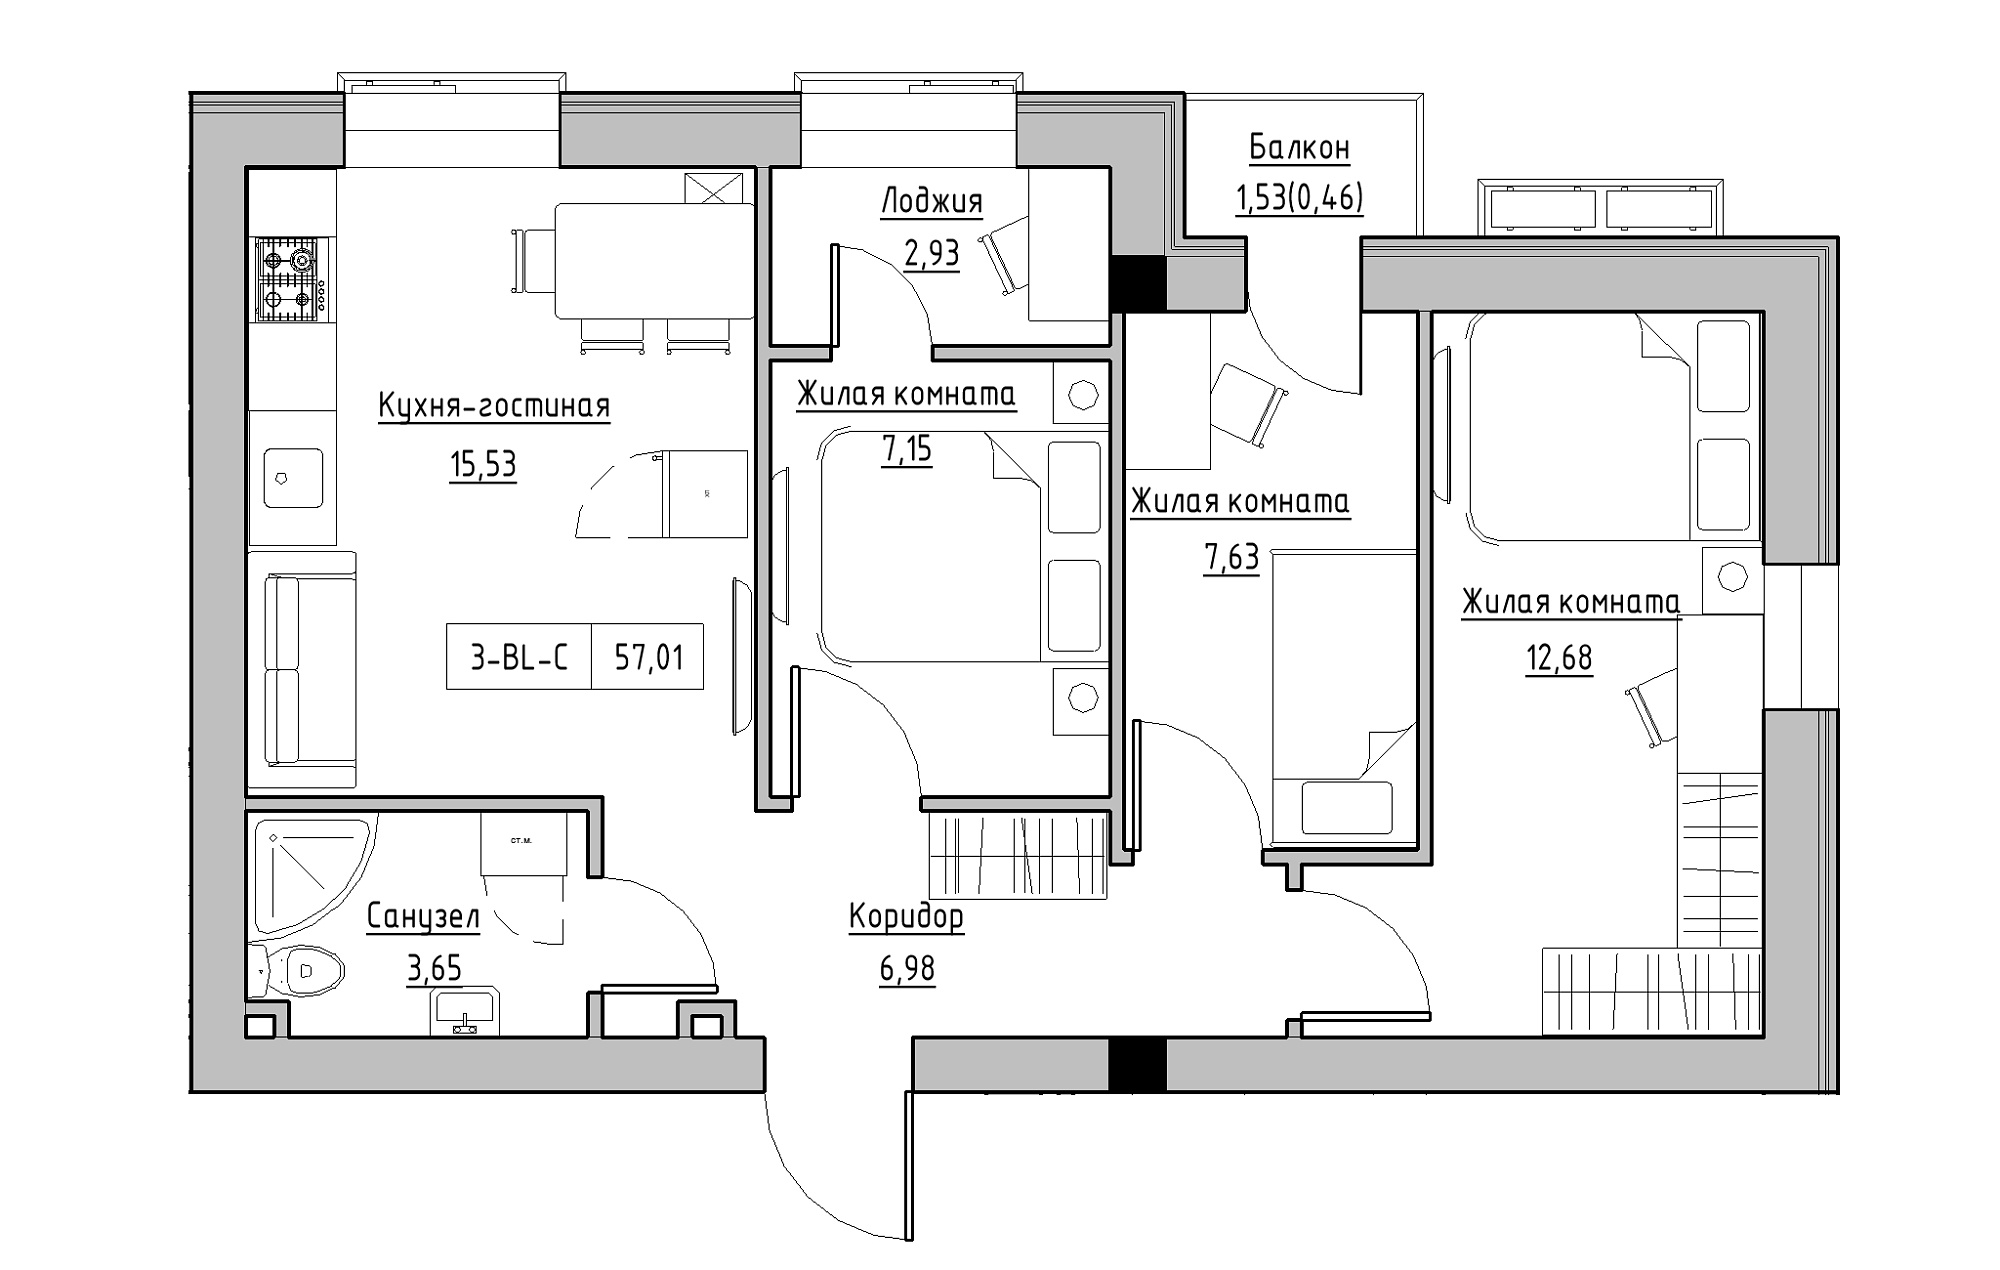 Планування 3-к квартира площею 57.01м2, KS-018-03/0008.